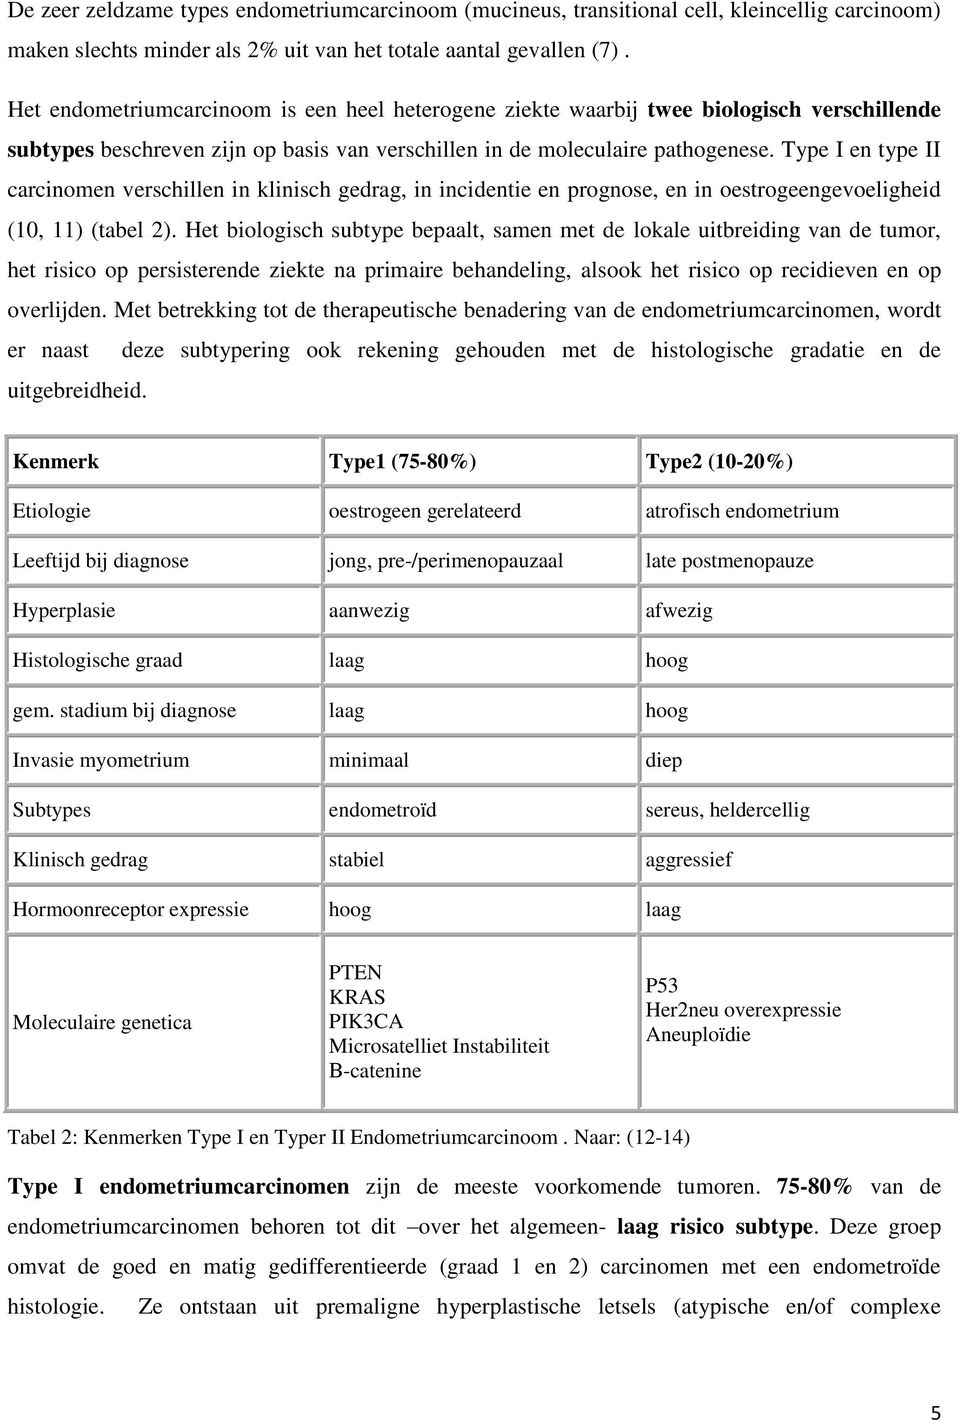 Type I en type II carcinomen verschillen in klinisch gedrag, in incidentie en prognose, en in oestrogeengevoeligheid (10, 11) (tabel 2).